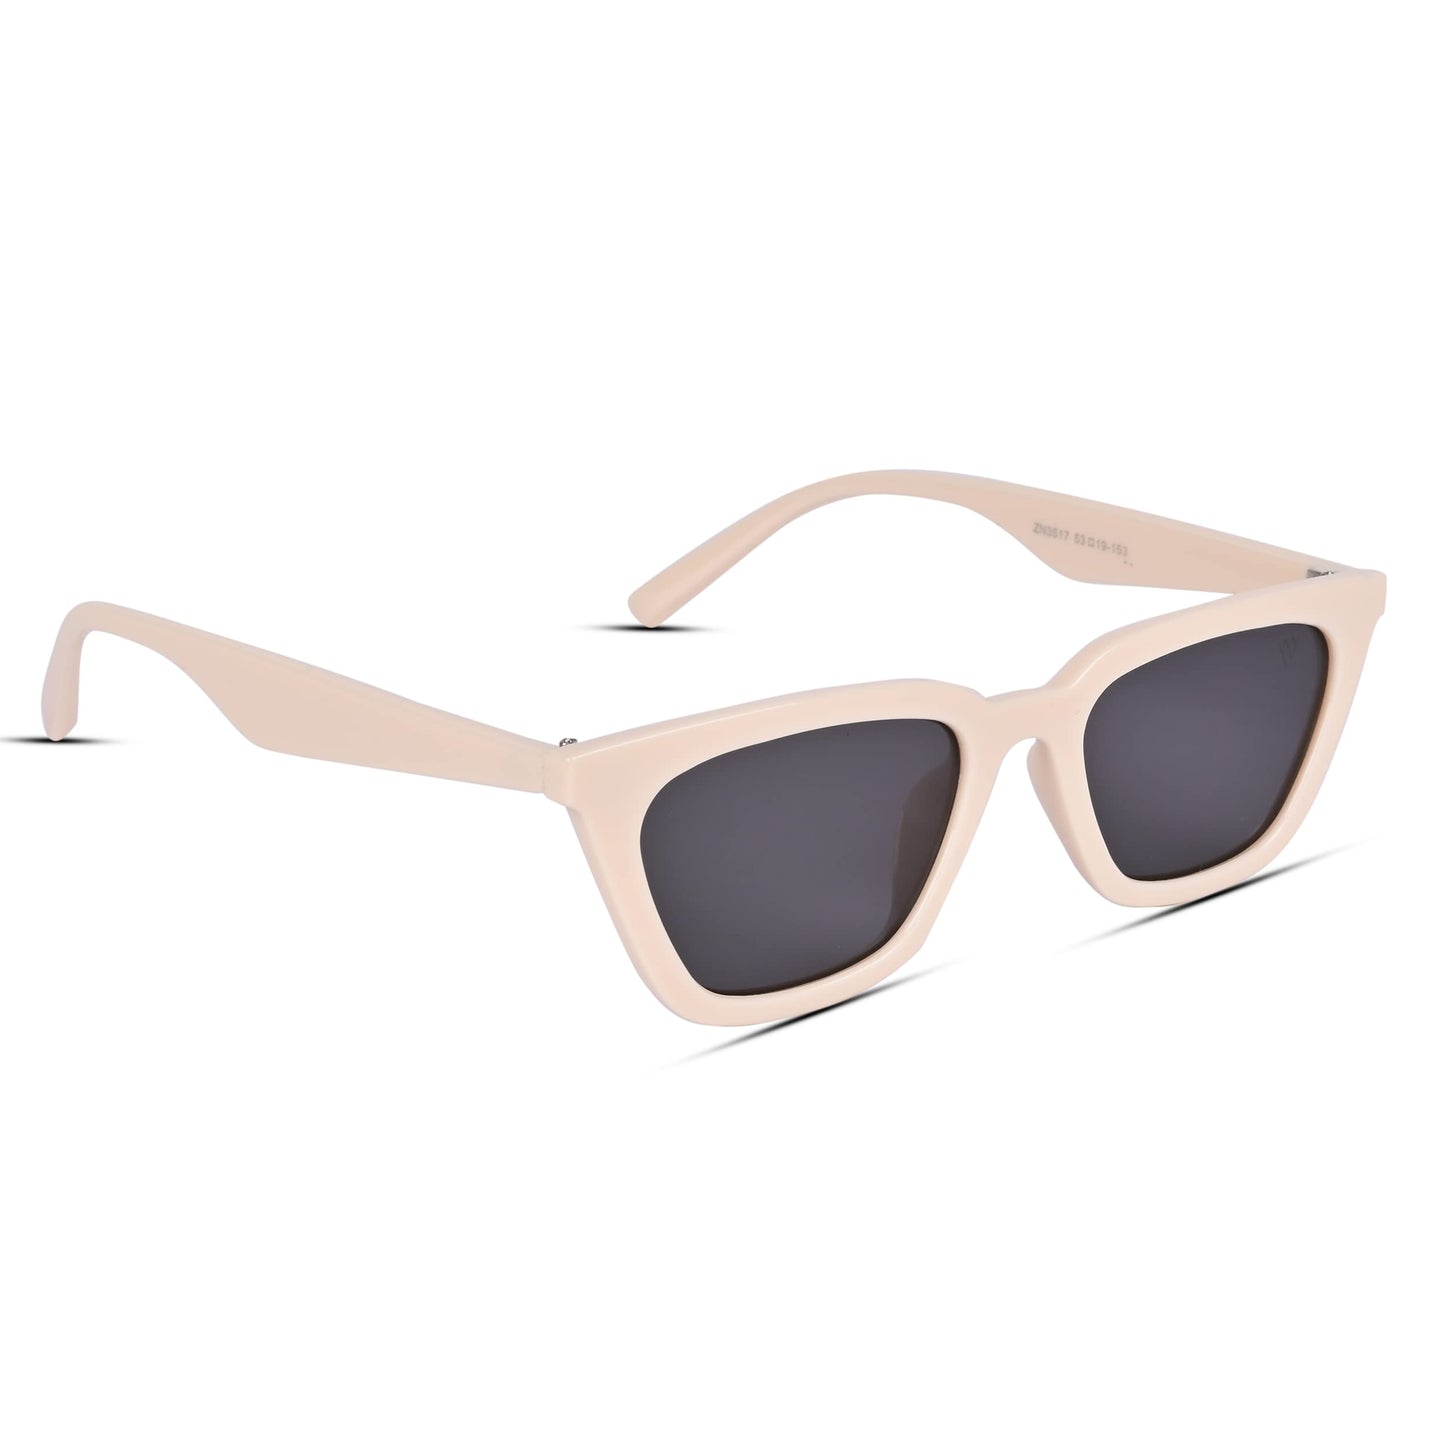 Voyage UV Protection Black Cat-Eye Sunglasses for Women (3517MG3762 | Beige Frame | Black Lens)